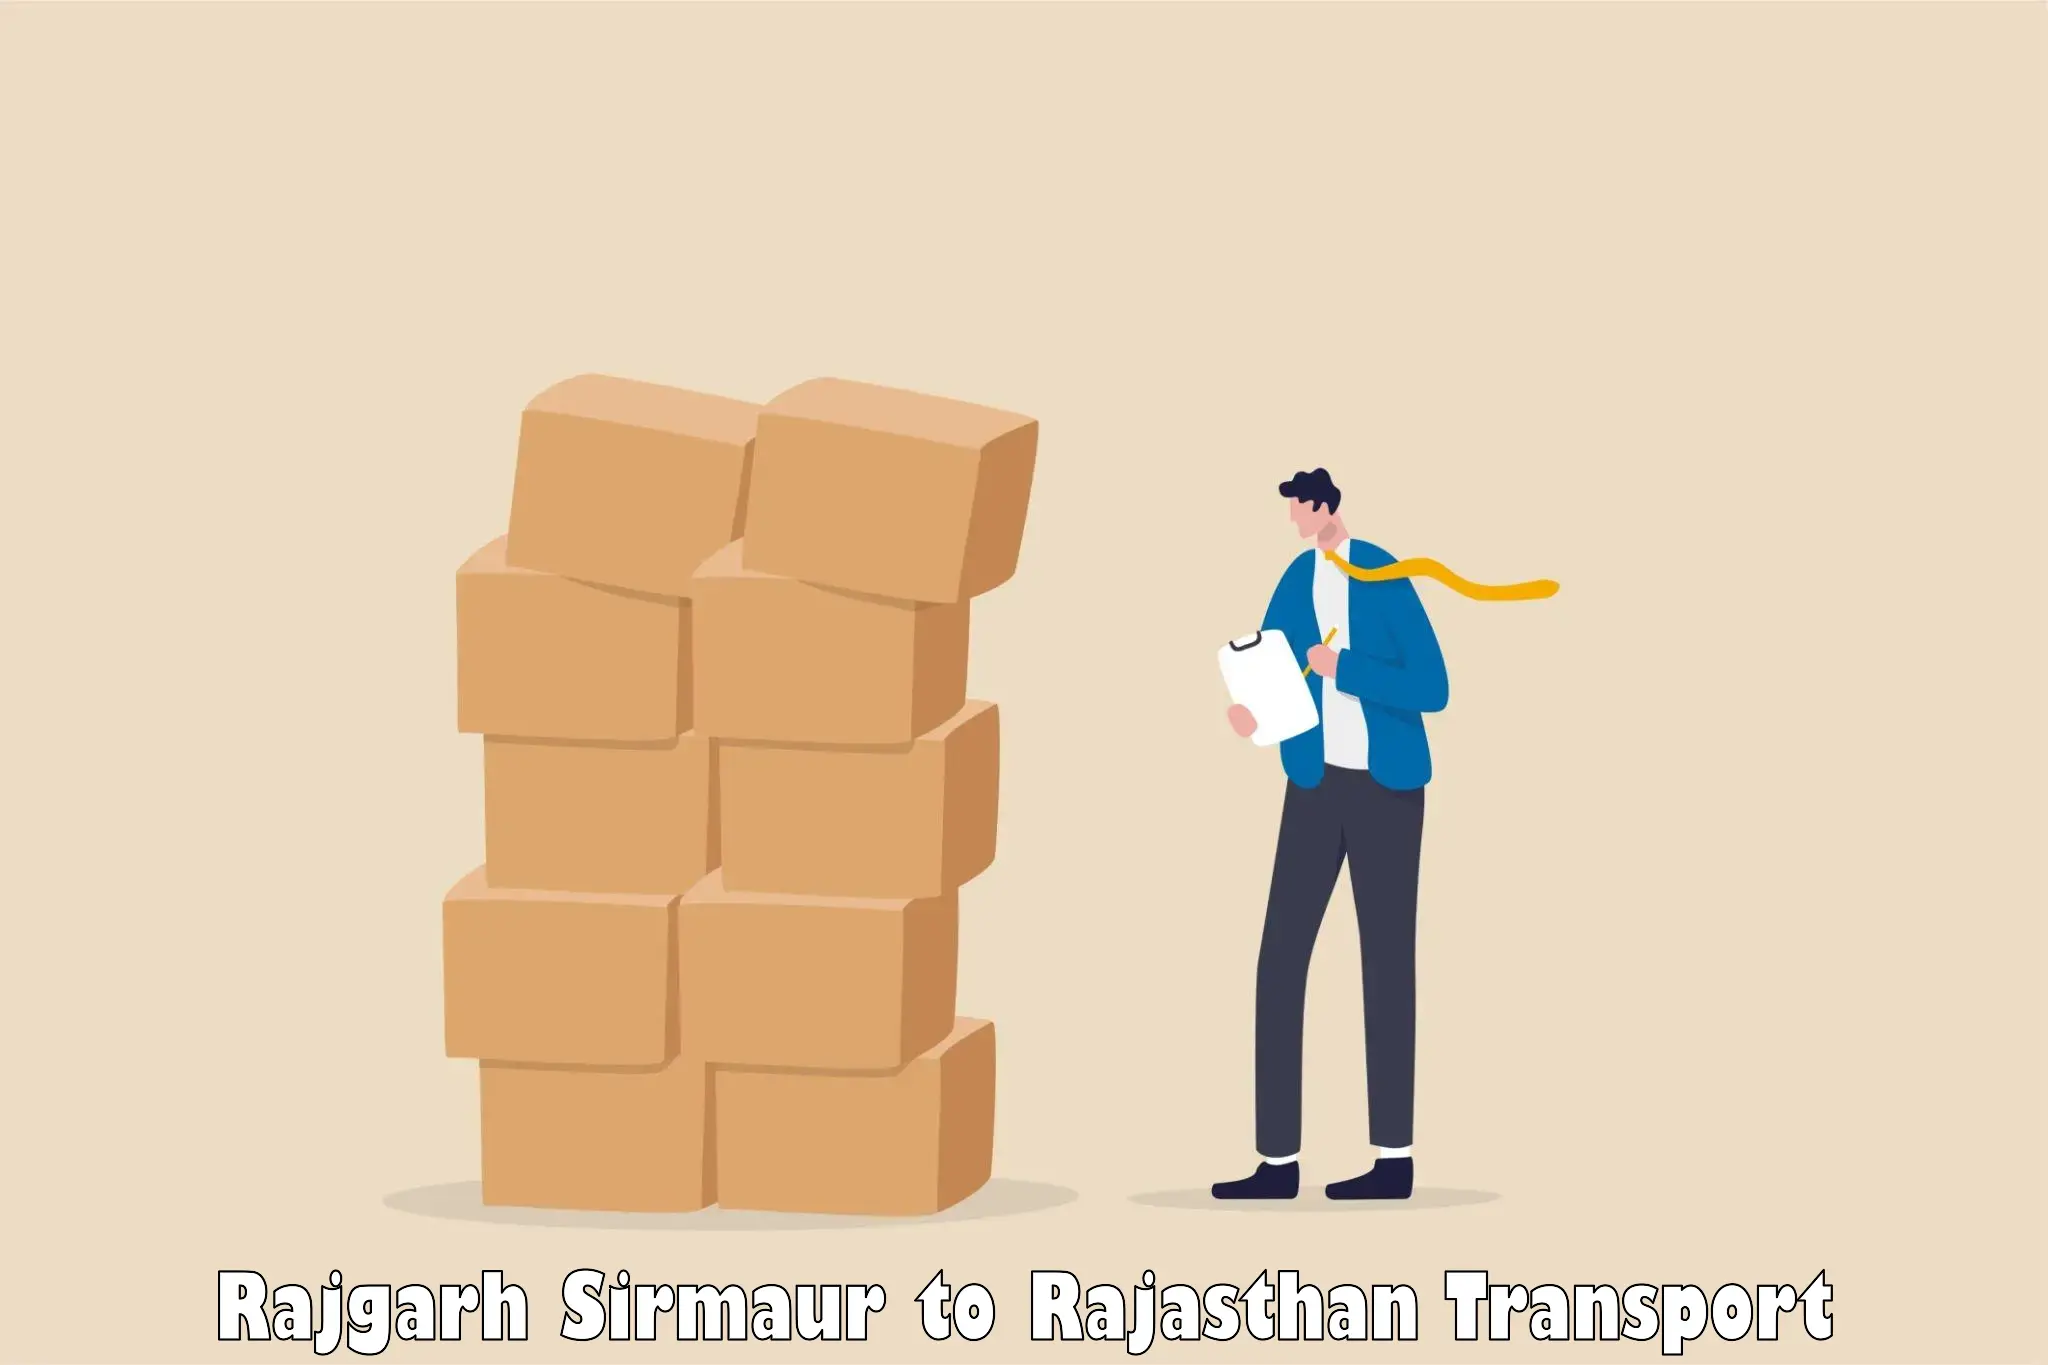 Furniture transport service Rajgarh Sirmaur to Rajasthan